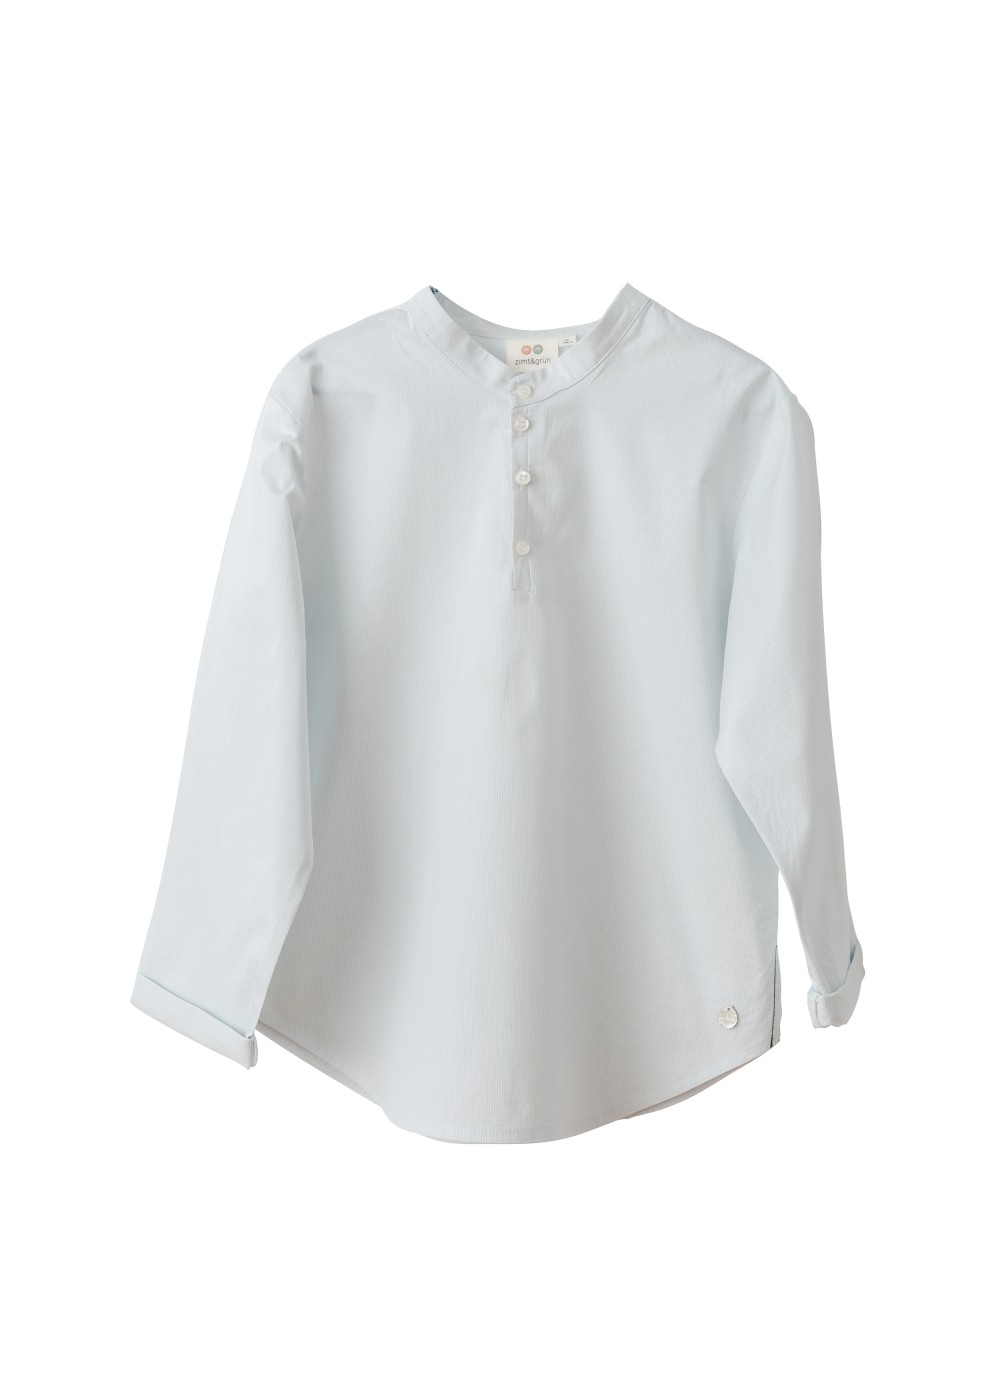 Langarm-Hemd Adler in Weiß, elastische Baumwolle, Knopfleiste